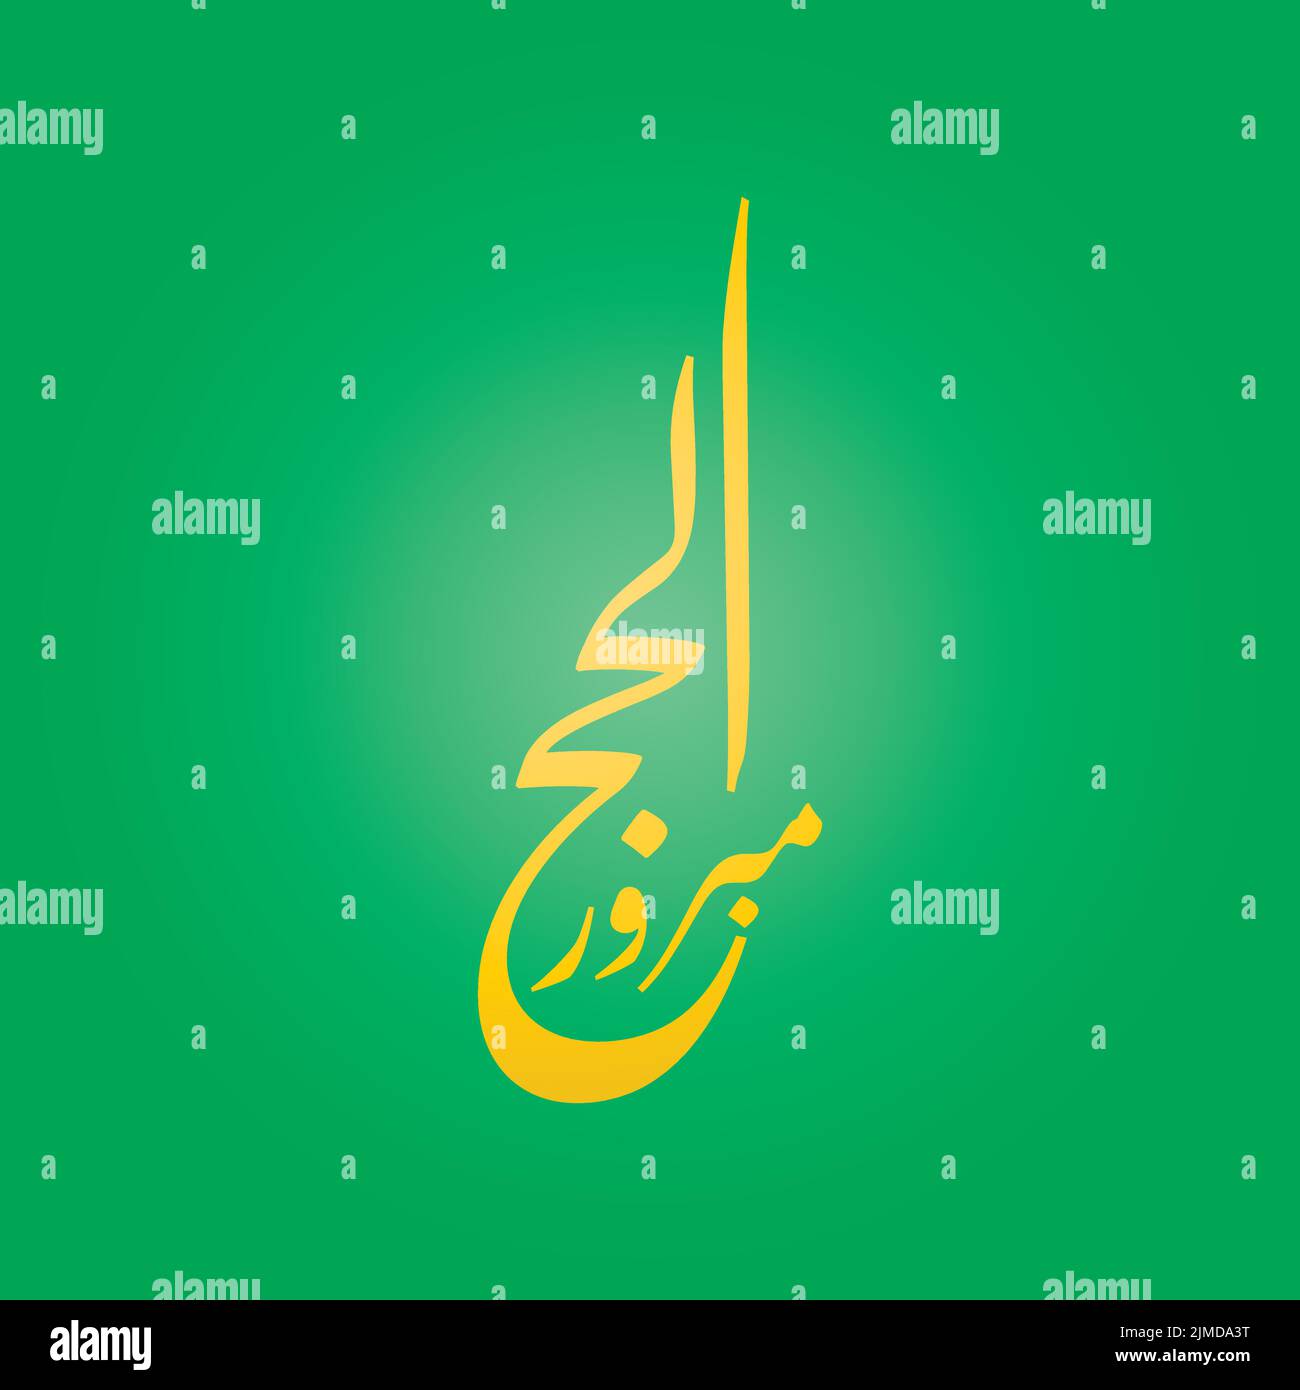 Hajj salutation dans l'art de la calligraphie arabe orthographié comme: Hajj Mabbrour. Et traduit comme: Puisse Allah accepter votre pèlerinage et pardonner vos péchés. Illustration de Vecteur